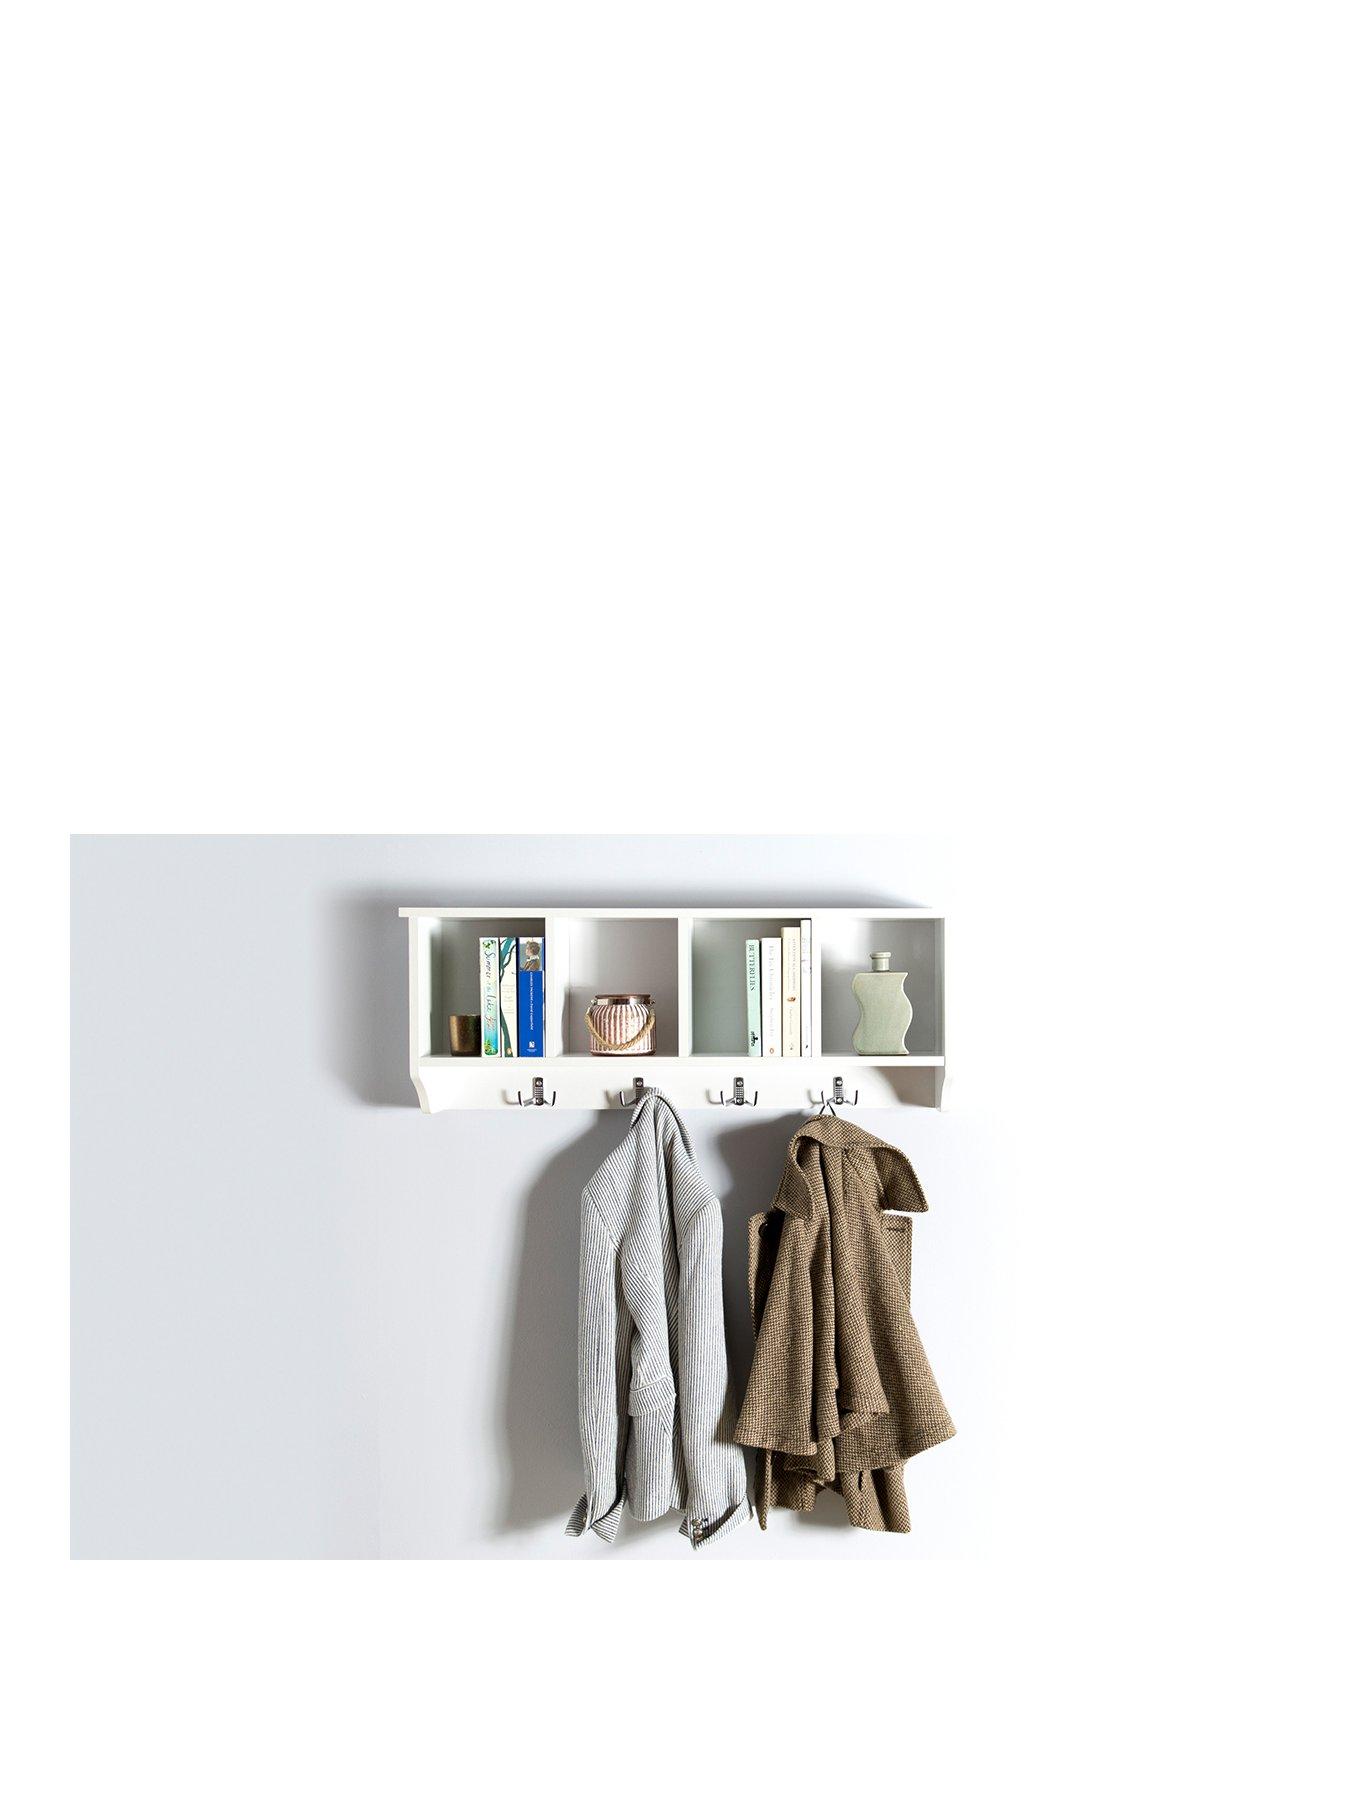 WHITE Kempton Wall Rack Storage Unit Shelf Holder Coat Jacket